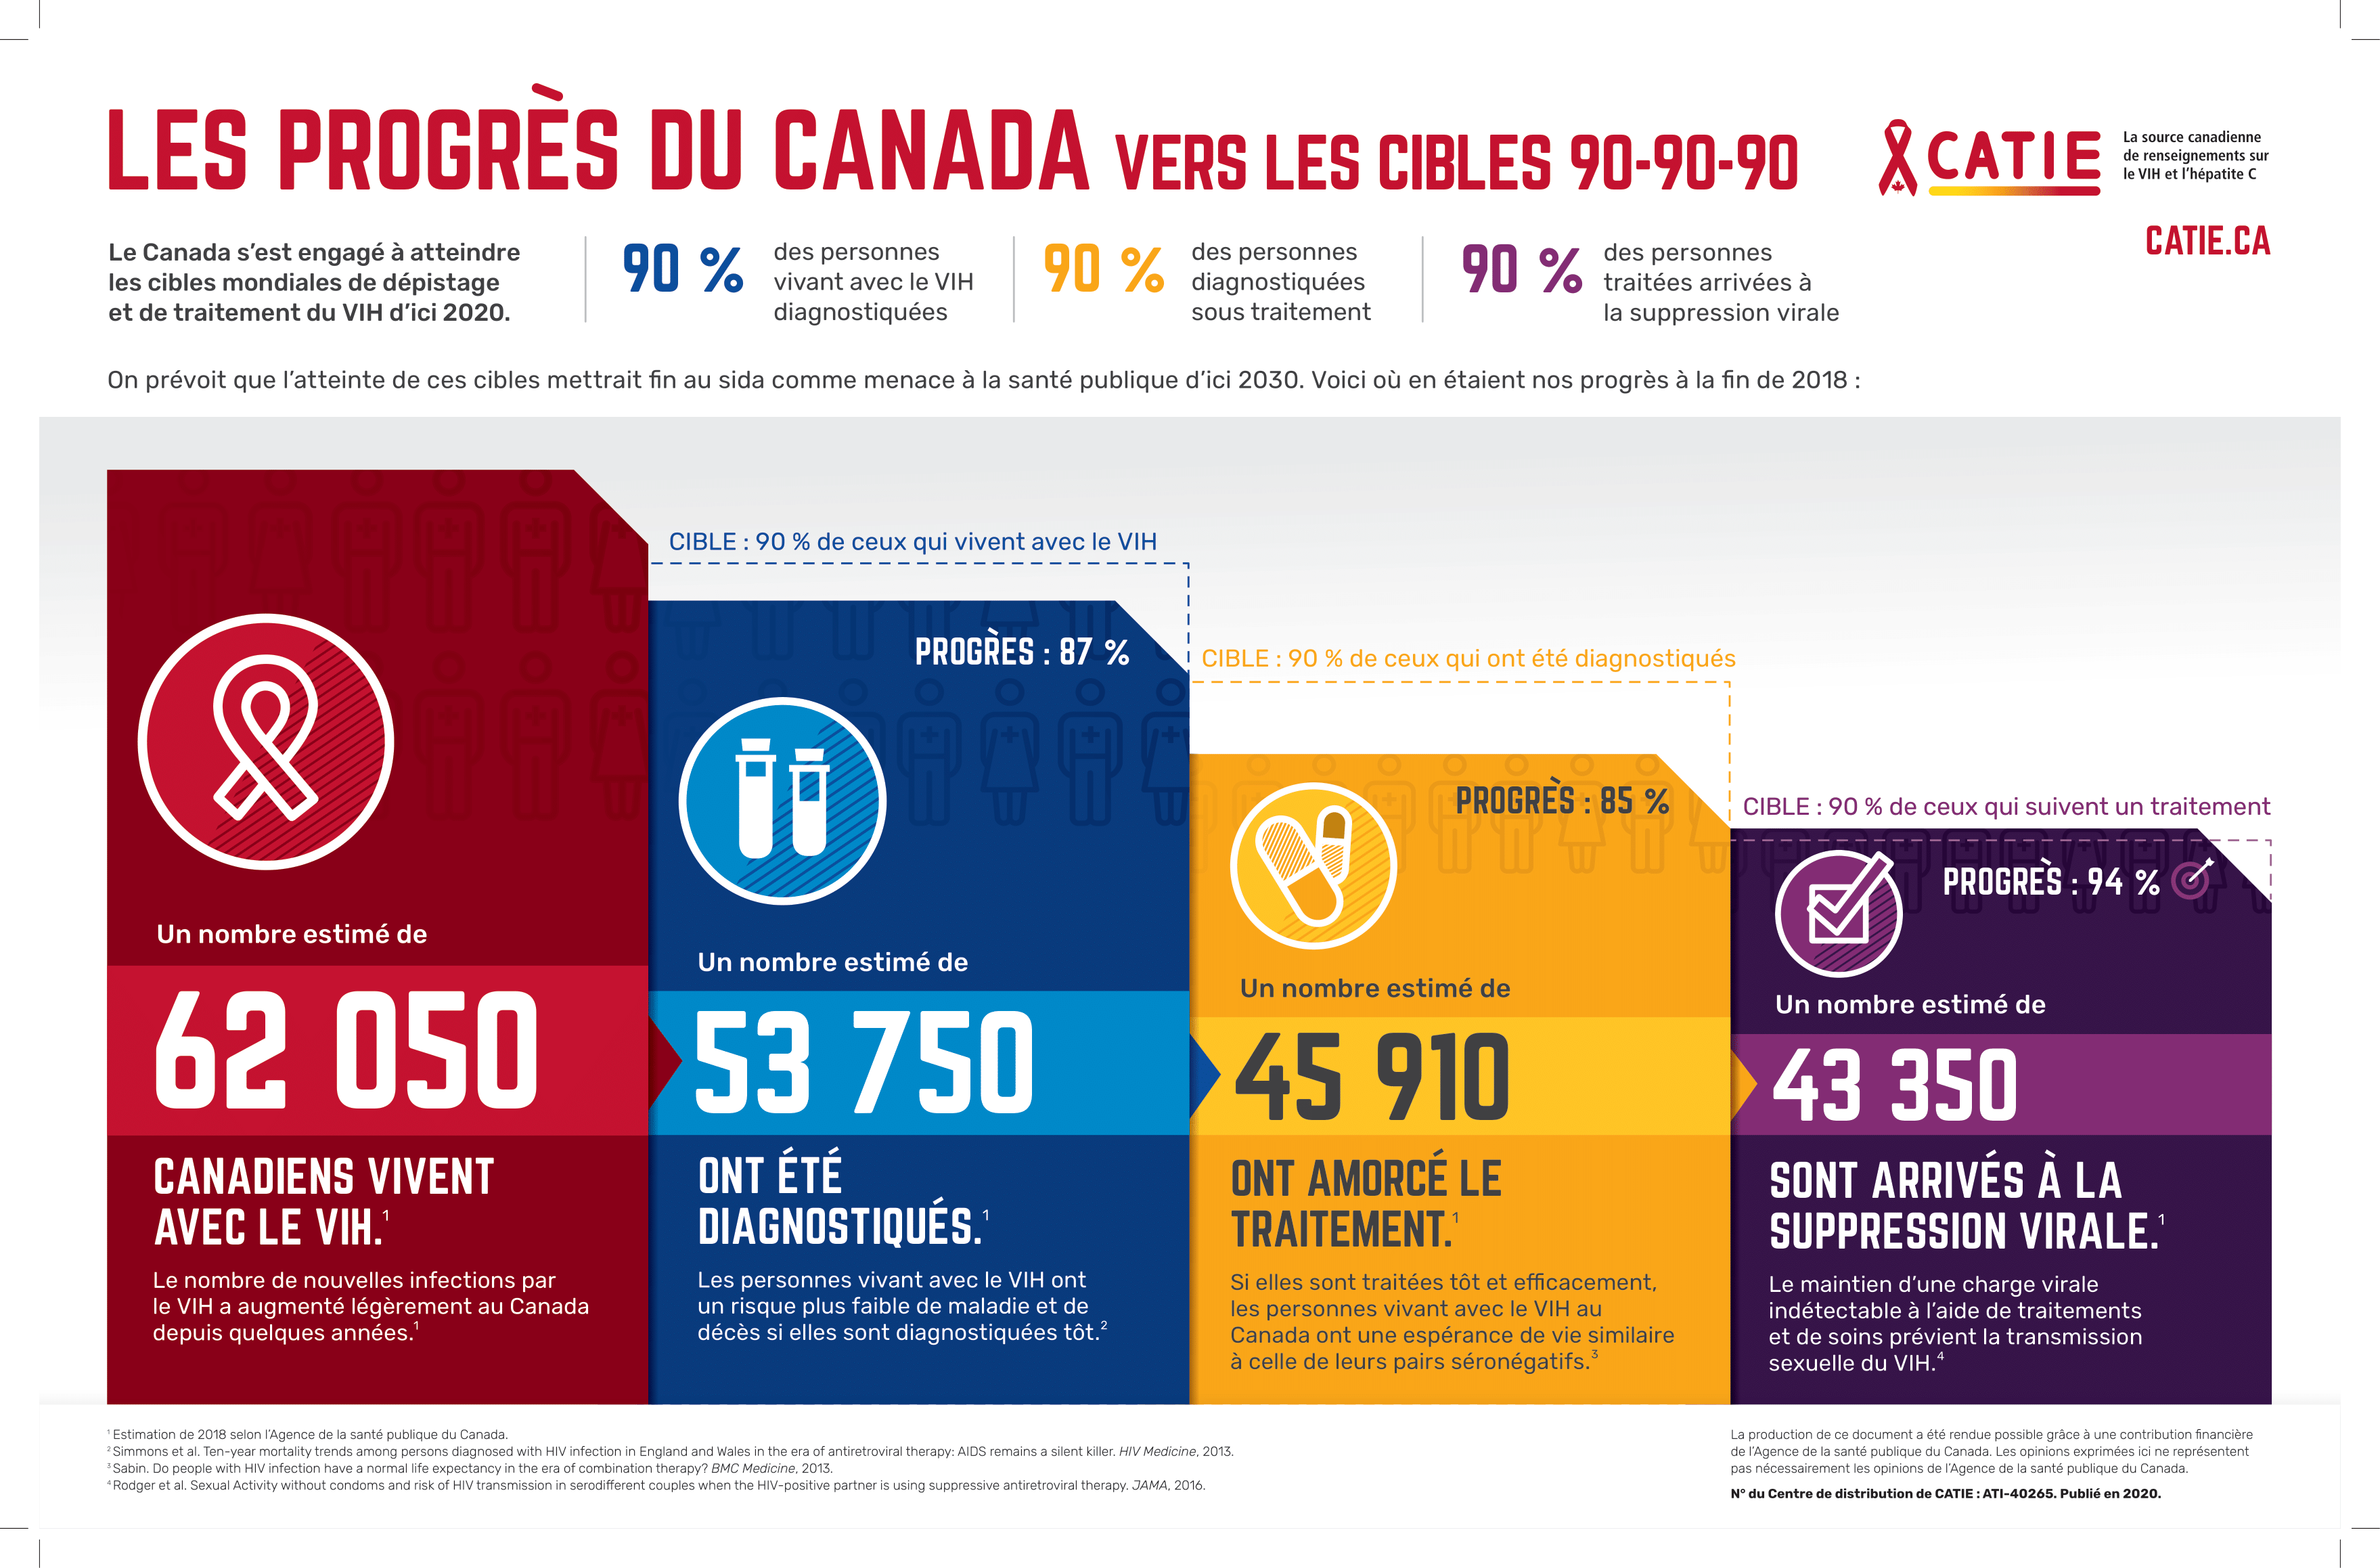 Les progrès du Canada vers les cibles 90-90-90